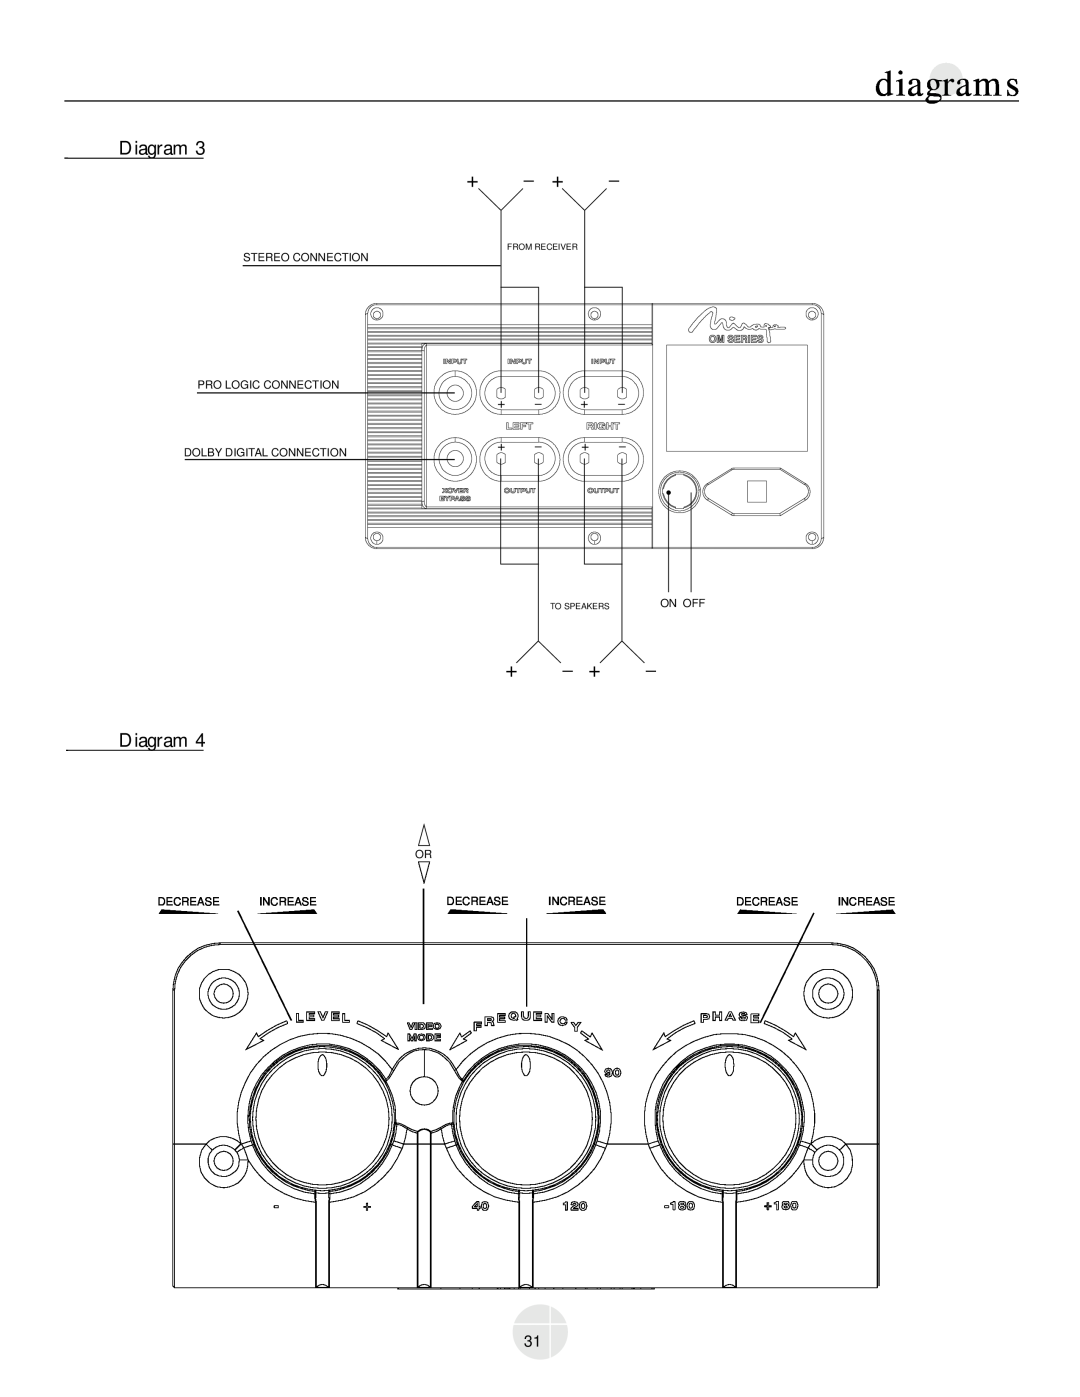 Mirage Loudspeakers OM-200 owner manual Diagram + +, diagrams, Increase, From Receiver, To Speakers 